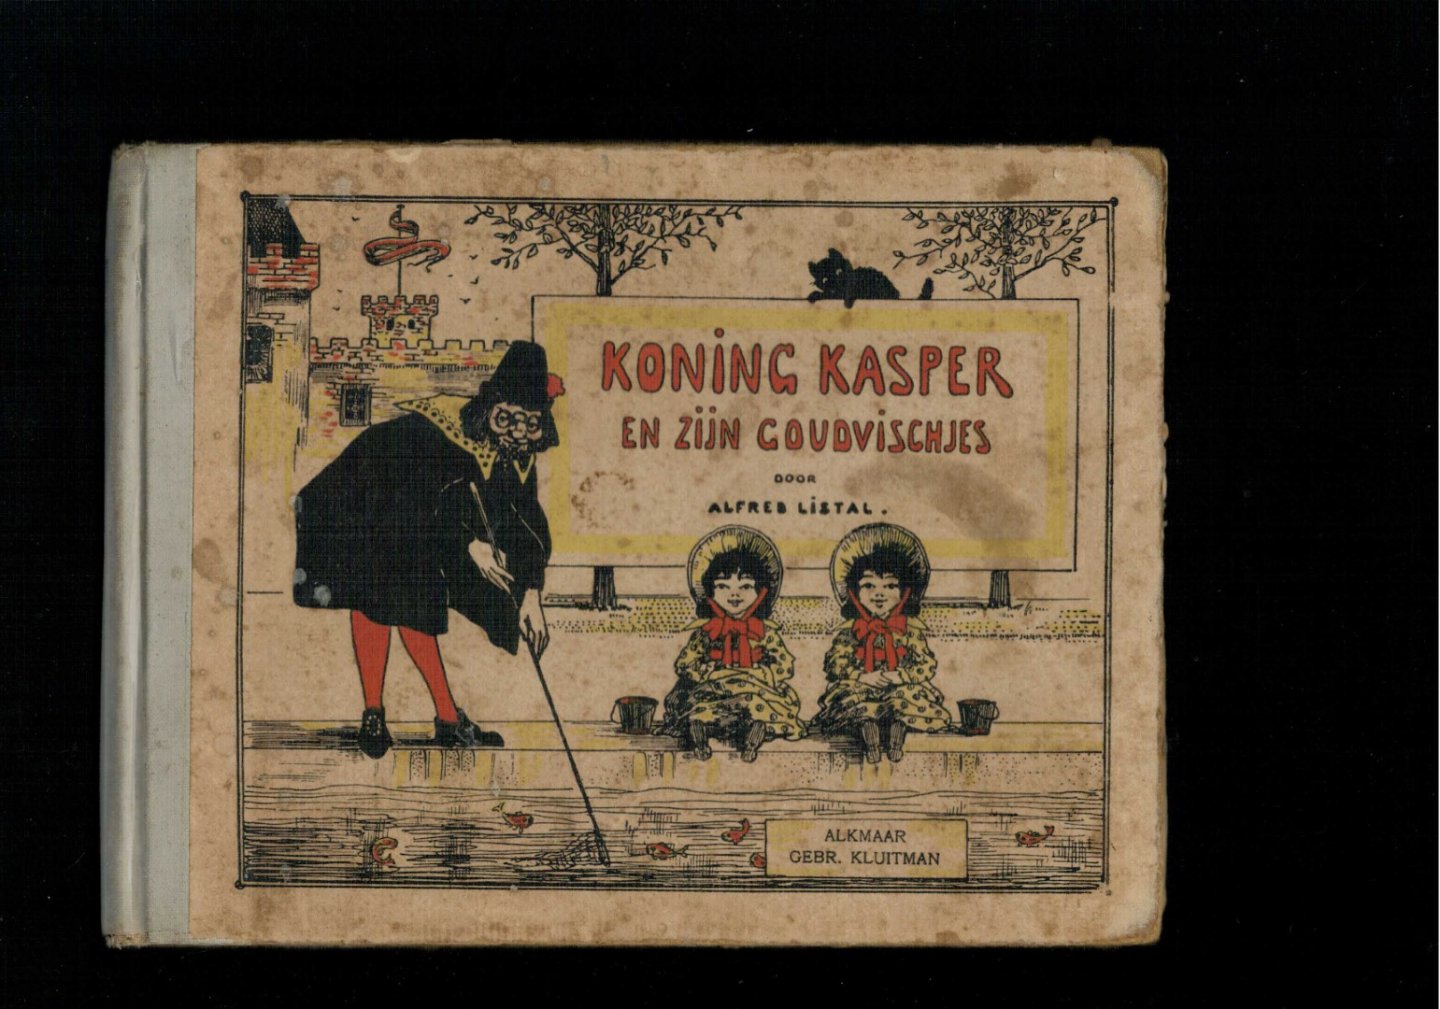 Listal, Alfred - pseud. van Willem Frederik Gouwe - Koning Kasper en zijn goudvischjes